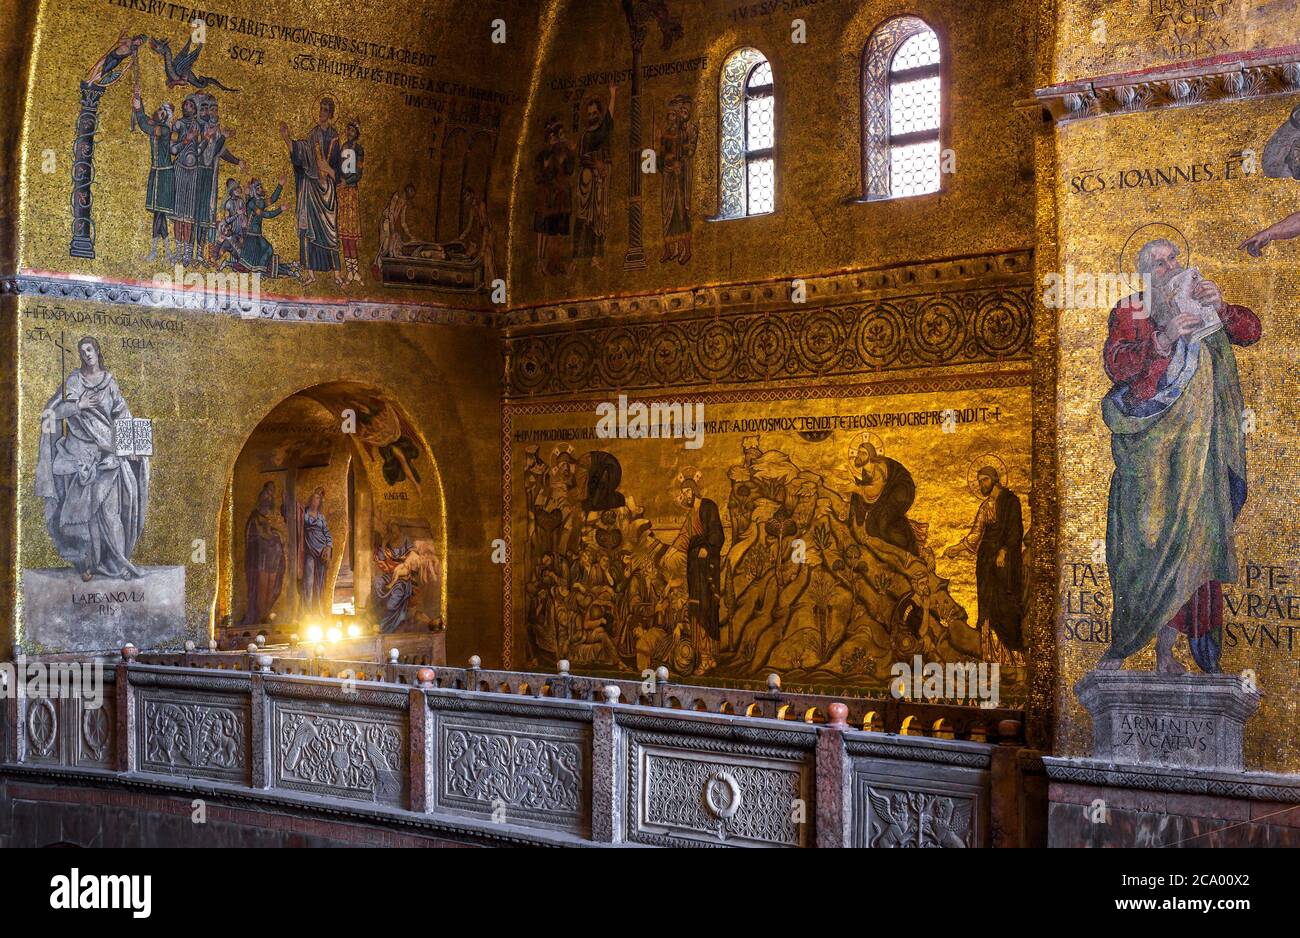 Venedig, Italien - 21. Mai 2017: Goldenes Wandmosaik`s Markusdom oder San Marco, es ist das Wahrzeichen von Venedig. Innenraum des berühmten Markusdom`s Stockfoto